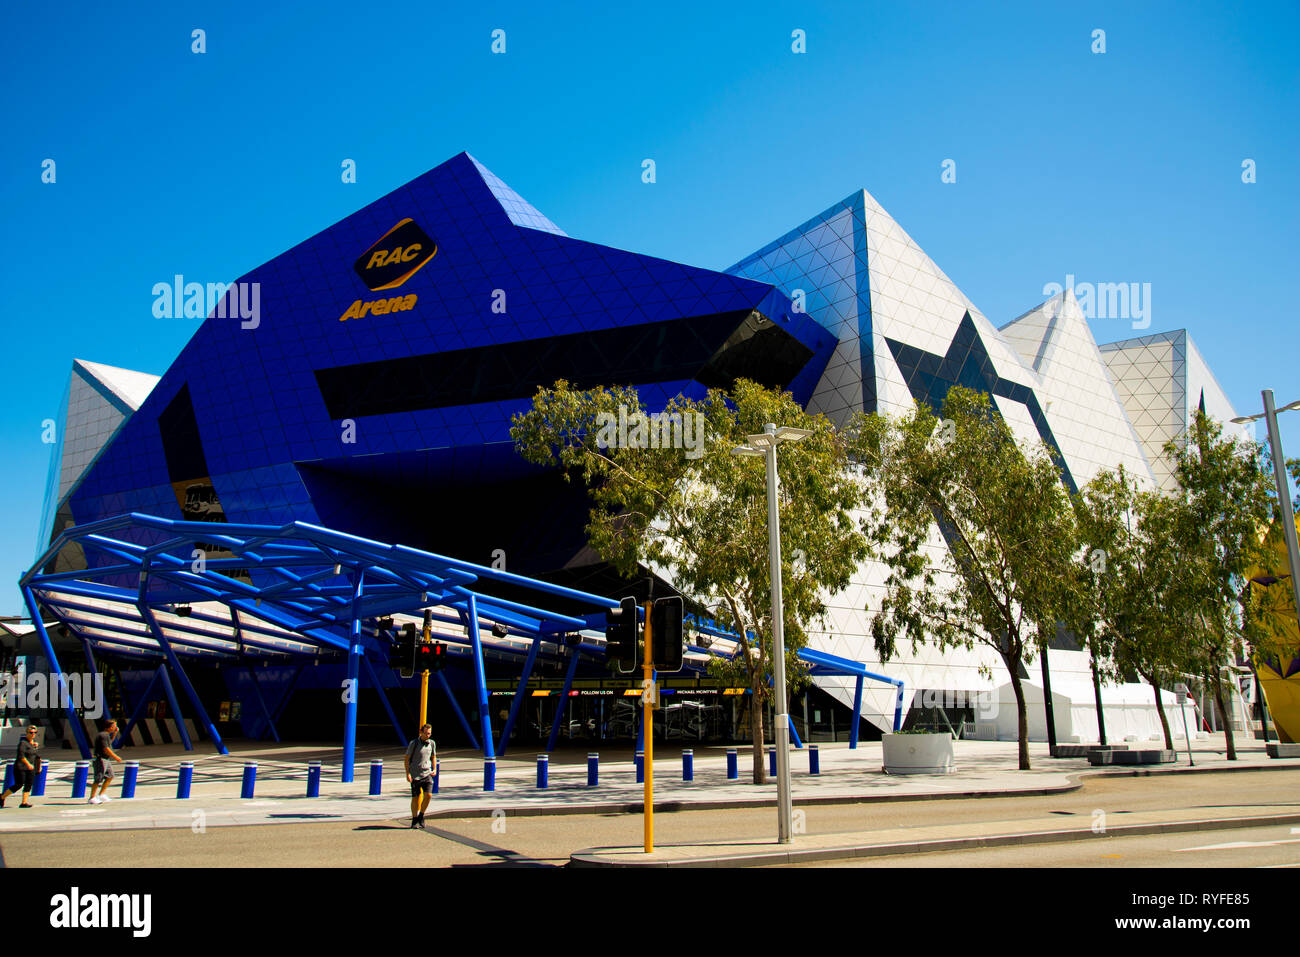 PERTH, Australien - 2. März, 2019: RAC-Arena ist ein Unterhaltungs- und sporting Arena wurde im Jahr 2012 erbaut und wurde von Architekturbüros Ashton Raggat konzipiert Stockfoto